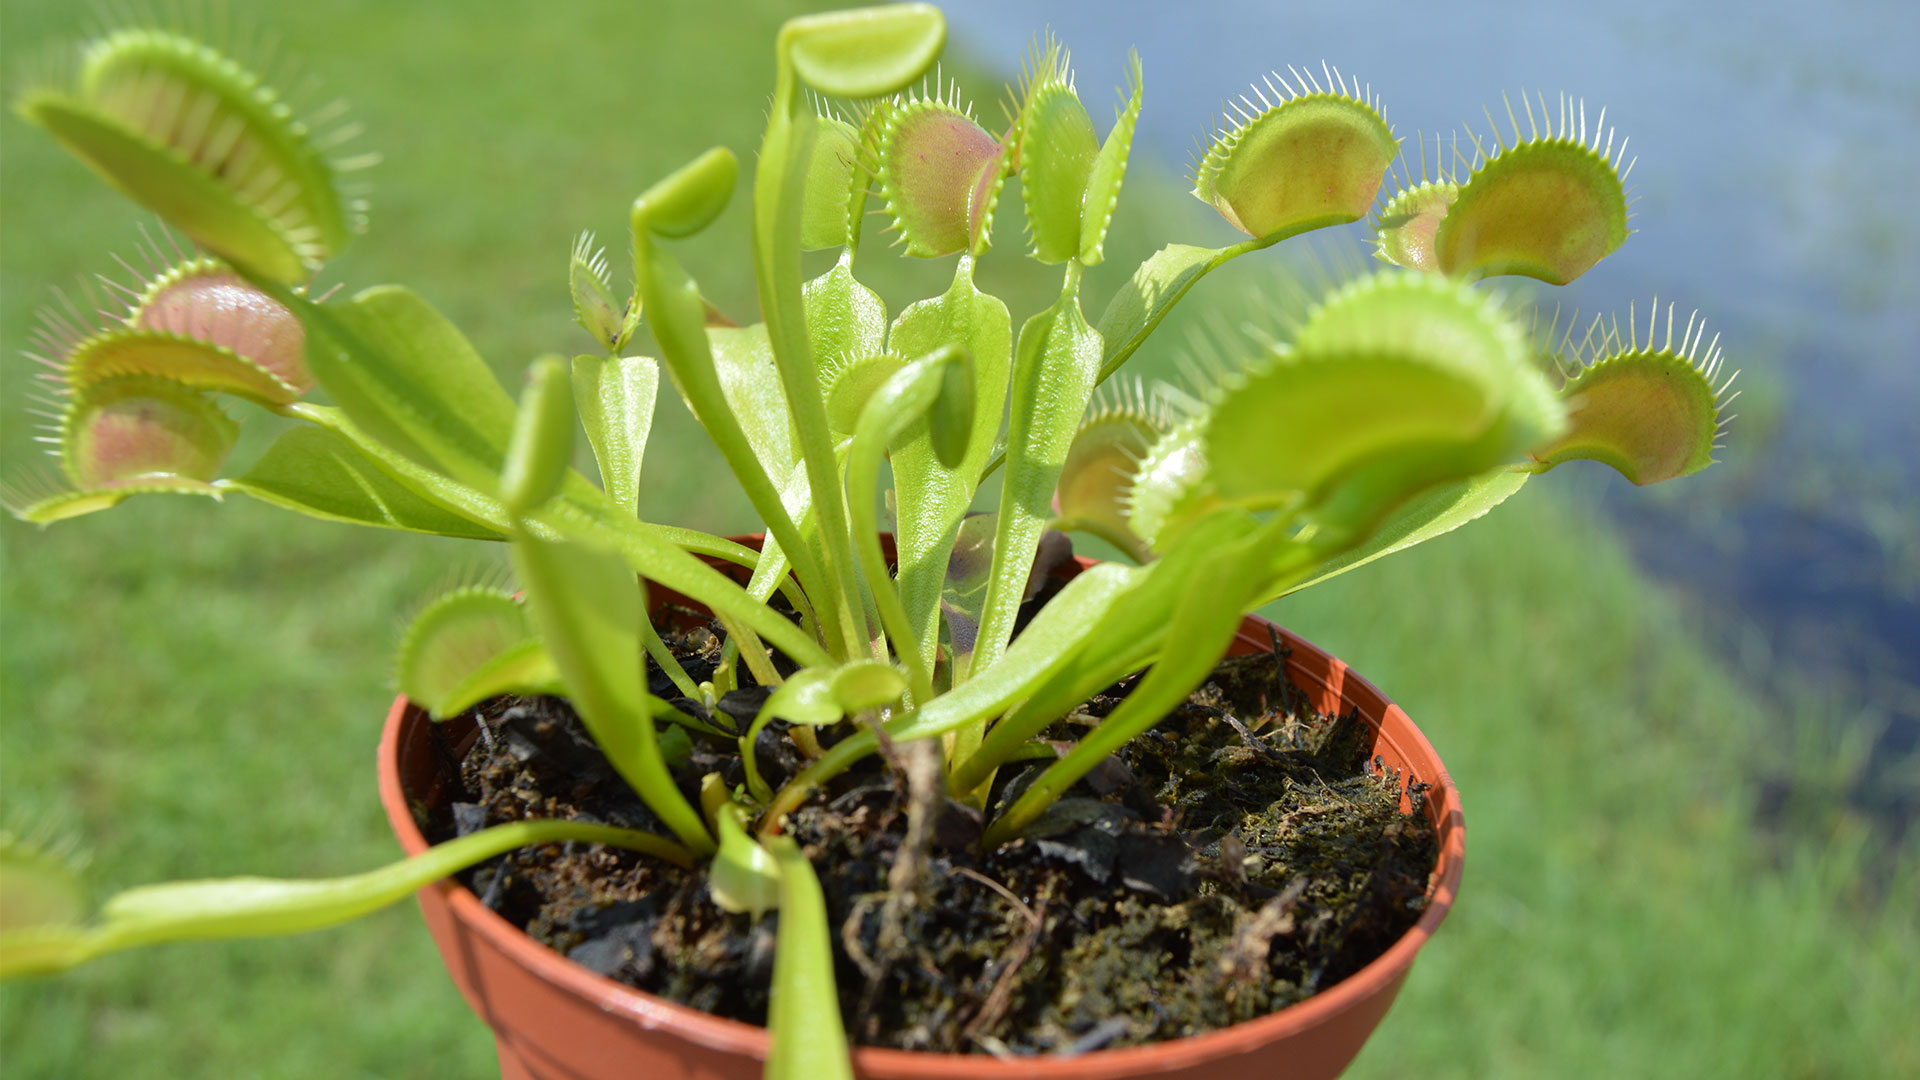 1x Adult Plant: Classic Venus Flytrap Dionaea Muscipula –